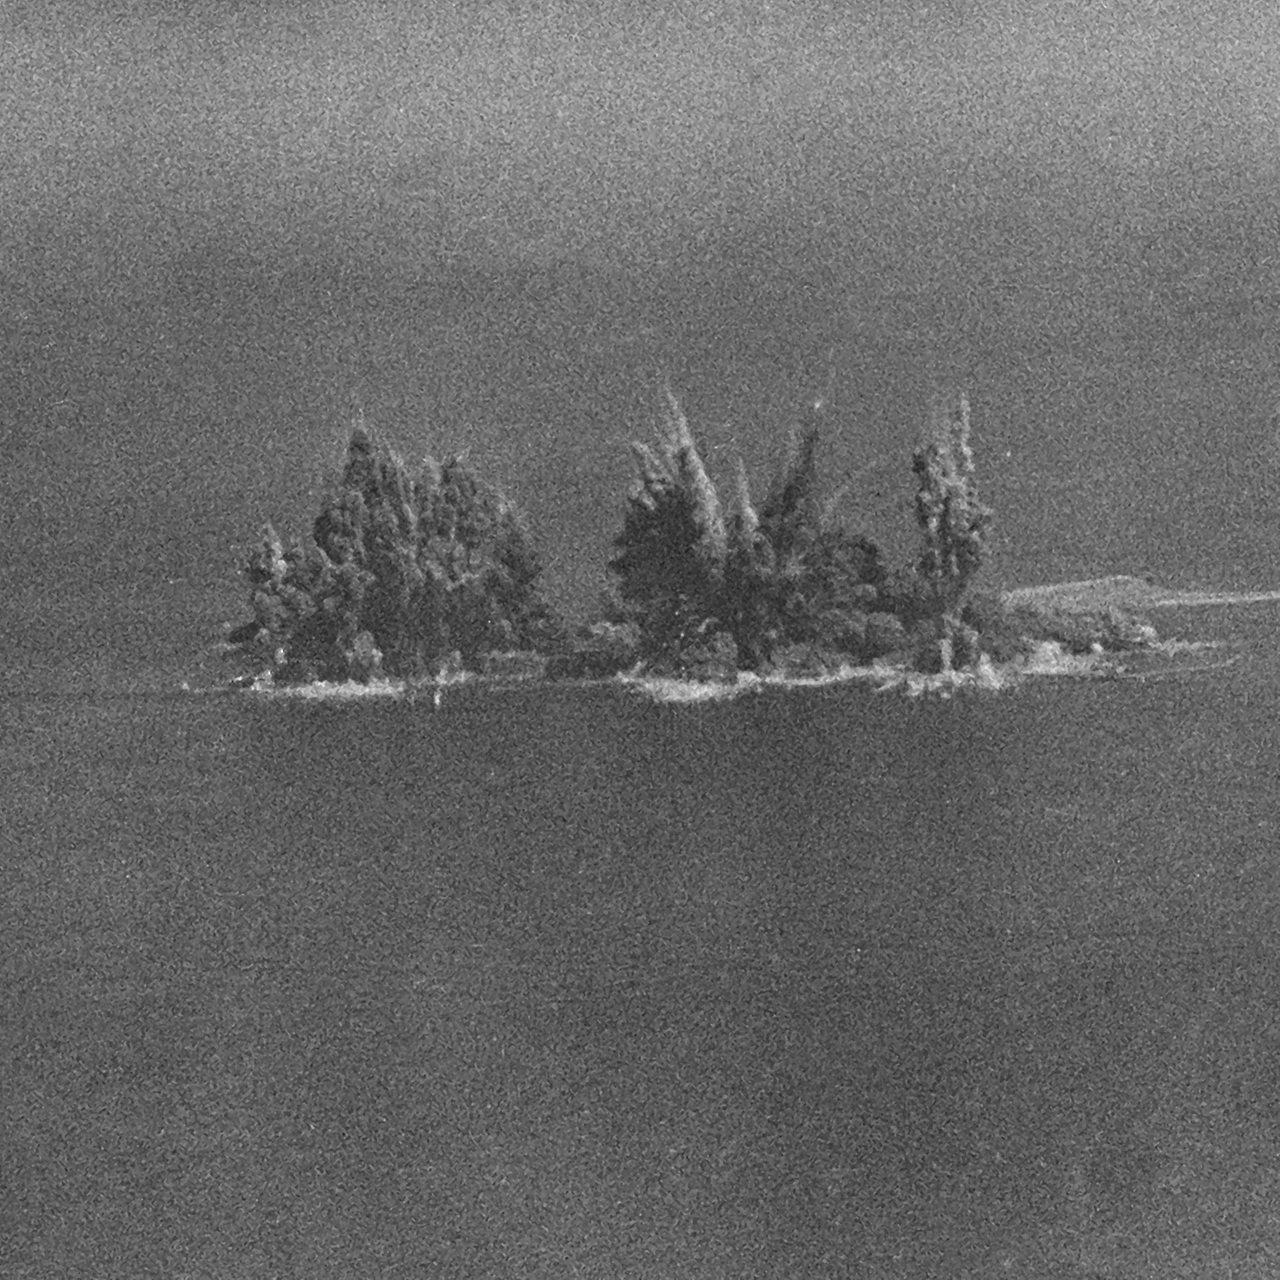 Britische Truppen sprengen am 18.04.1947 mit 6700 Tonnen Munition einen Teil der Nordseeinsel Helgoland.